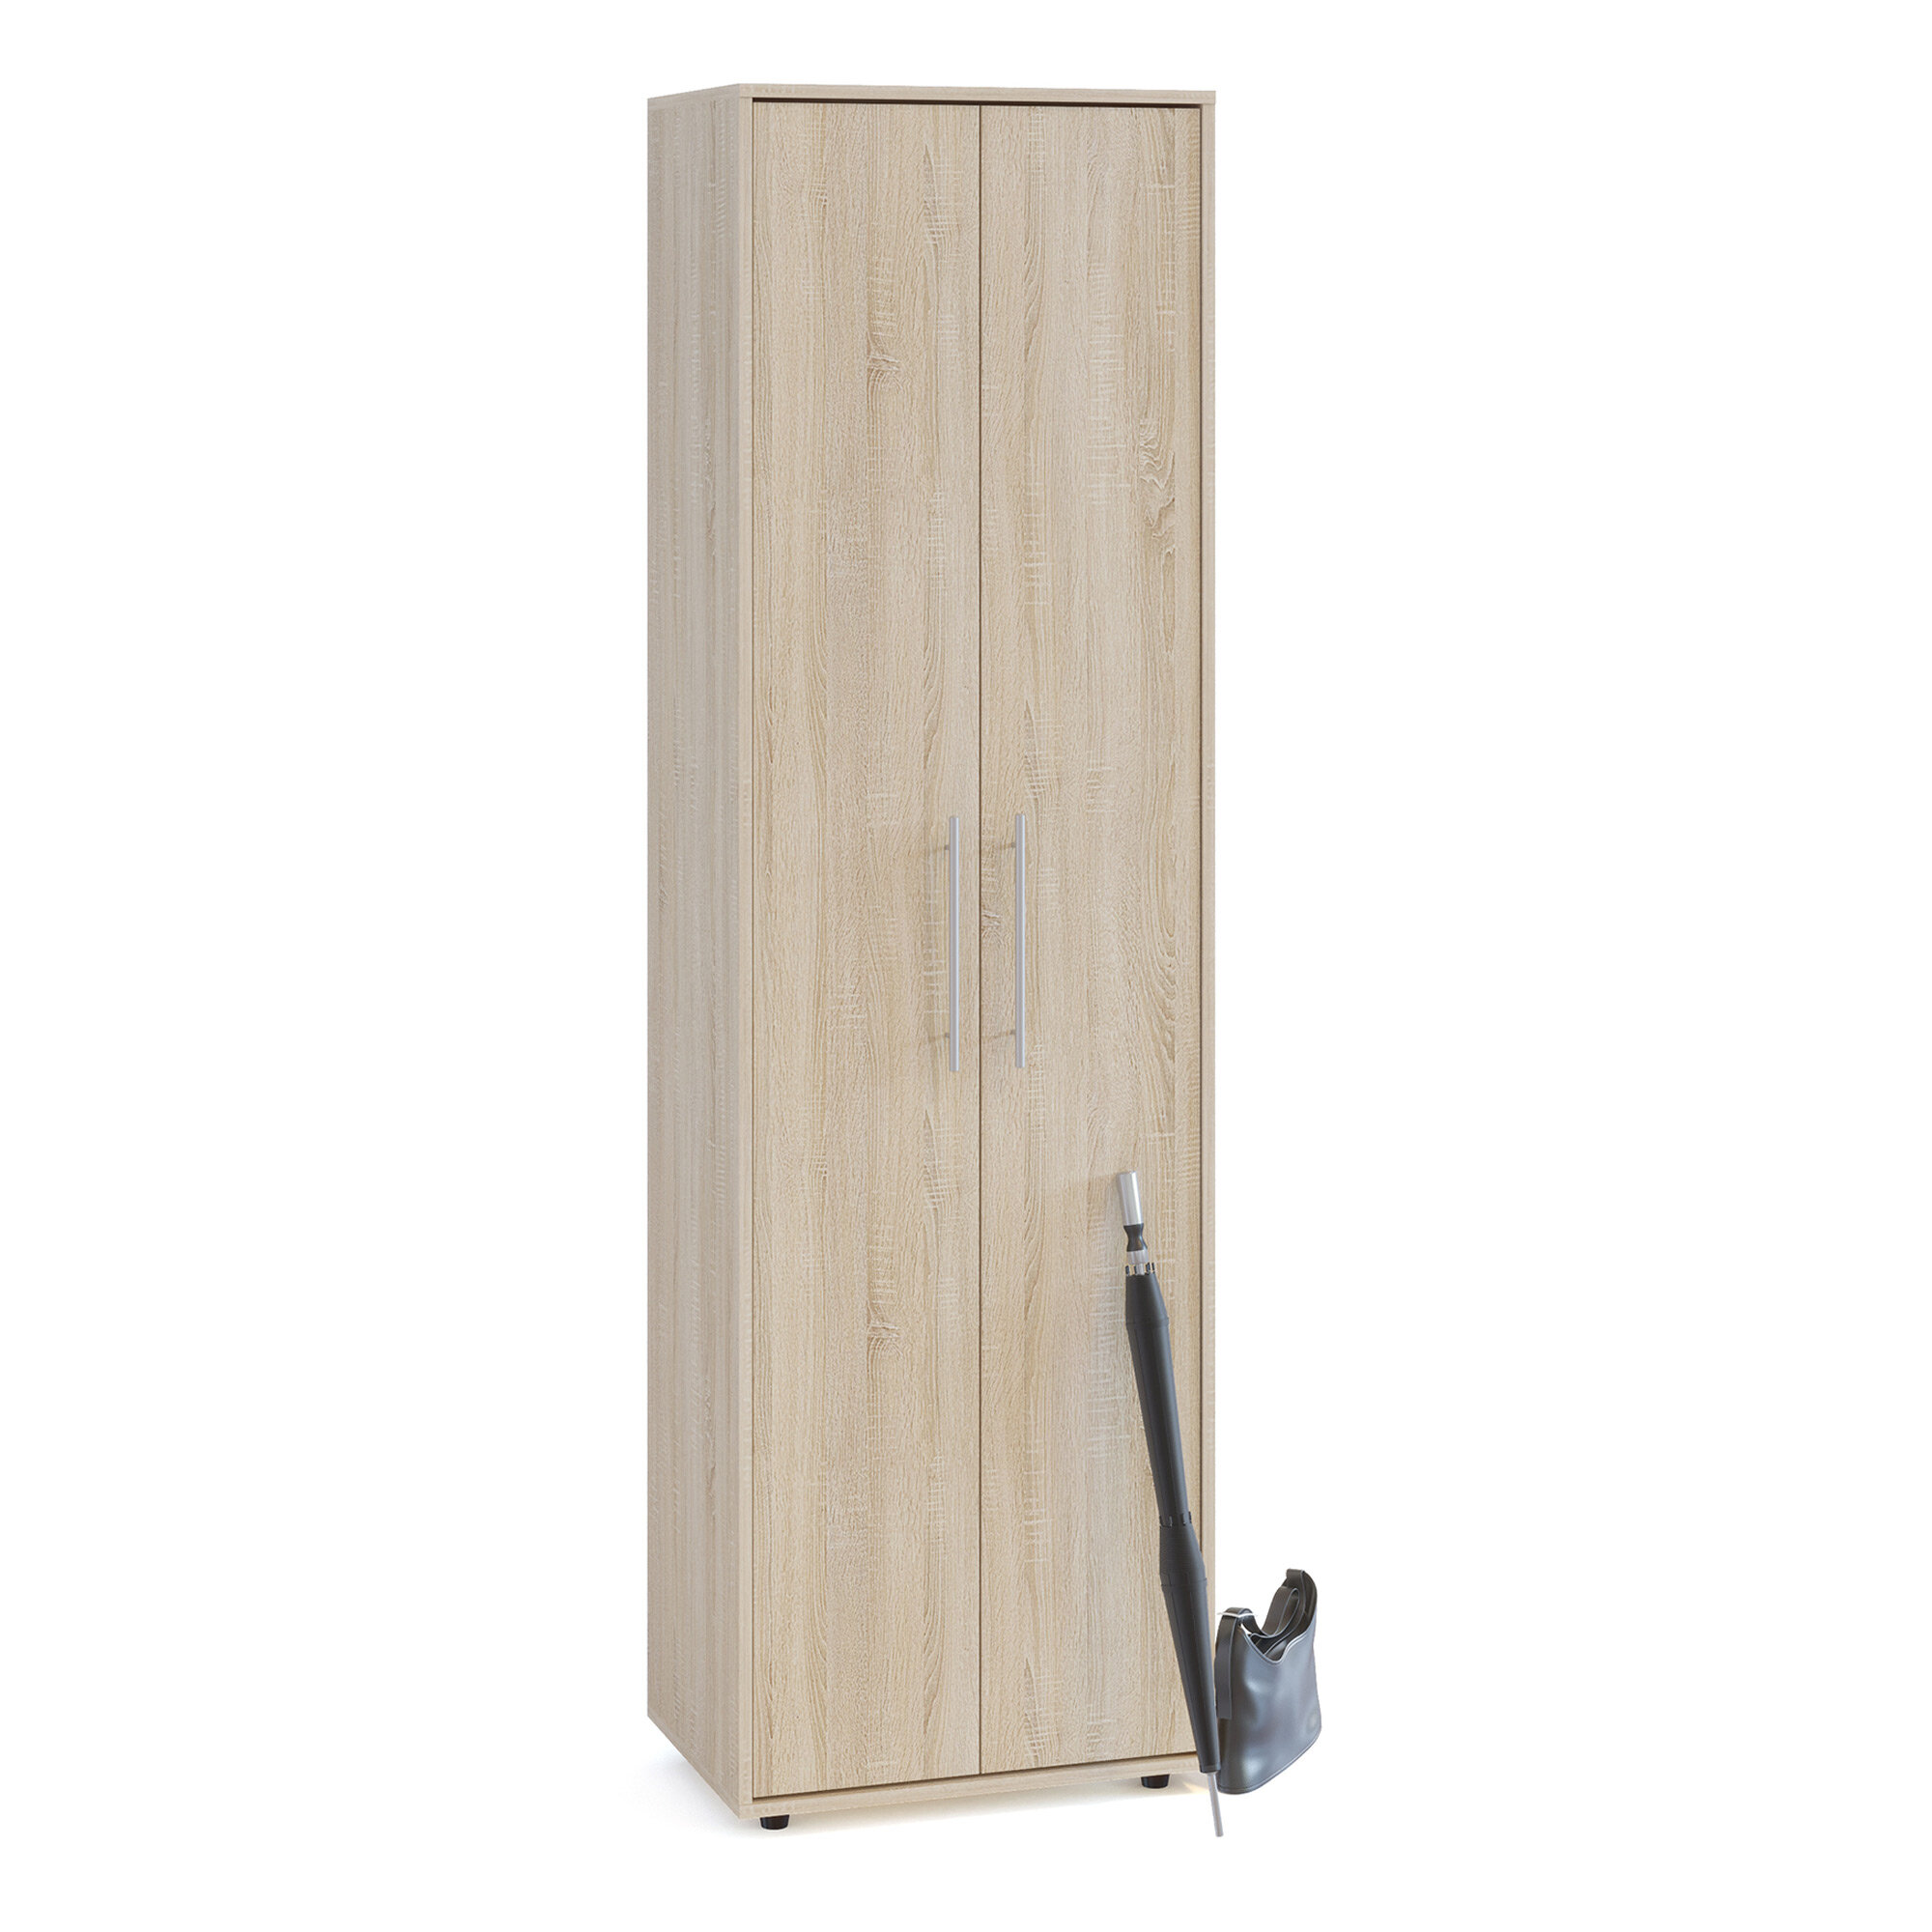 Шкаф для одежды с выдвижной штангой СШО-1, цвет дуб сонома, ШхГхВ 60х43х209 см.